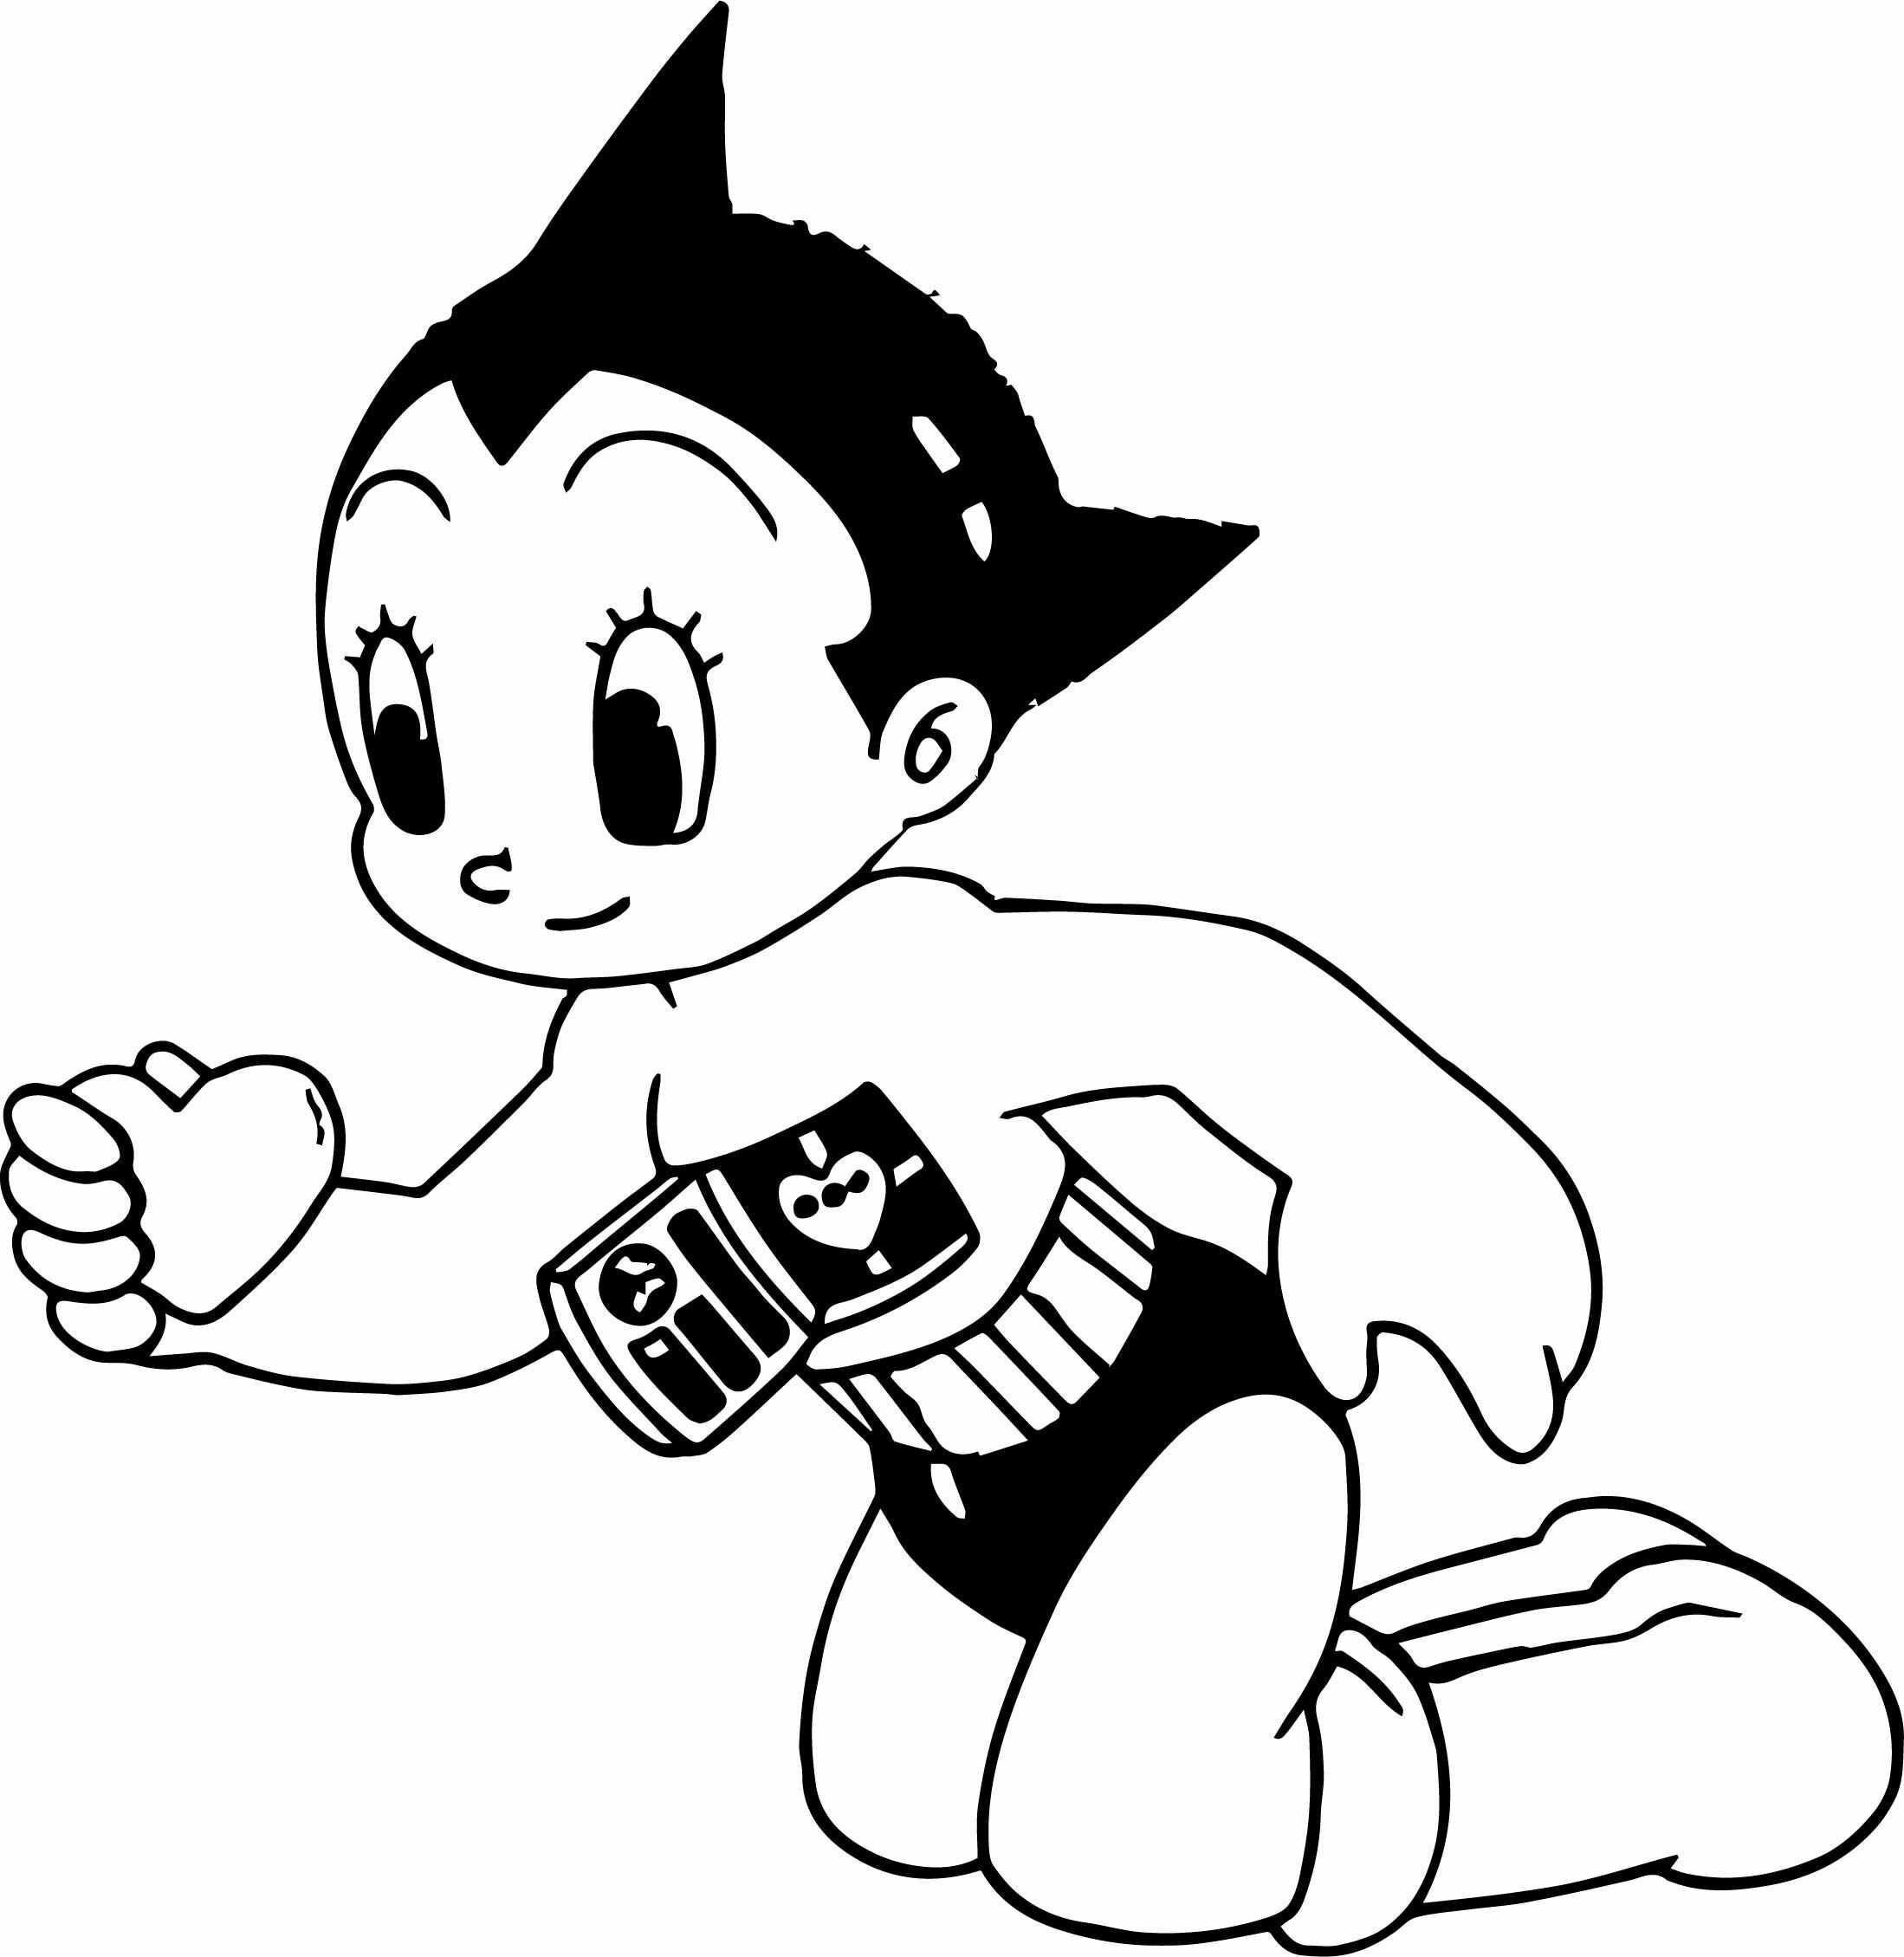 Atom Astro Boy забрал сердце из груди у Astro Boy